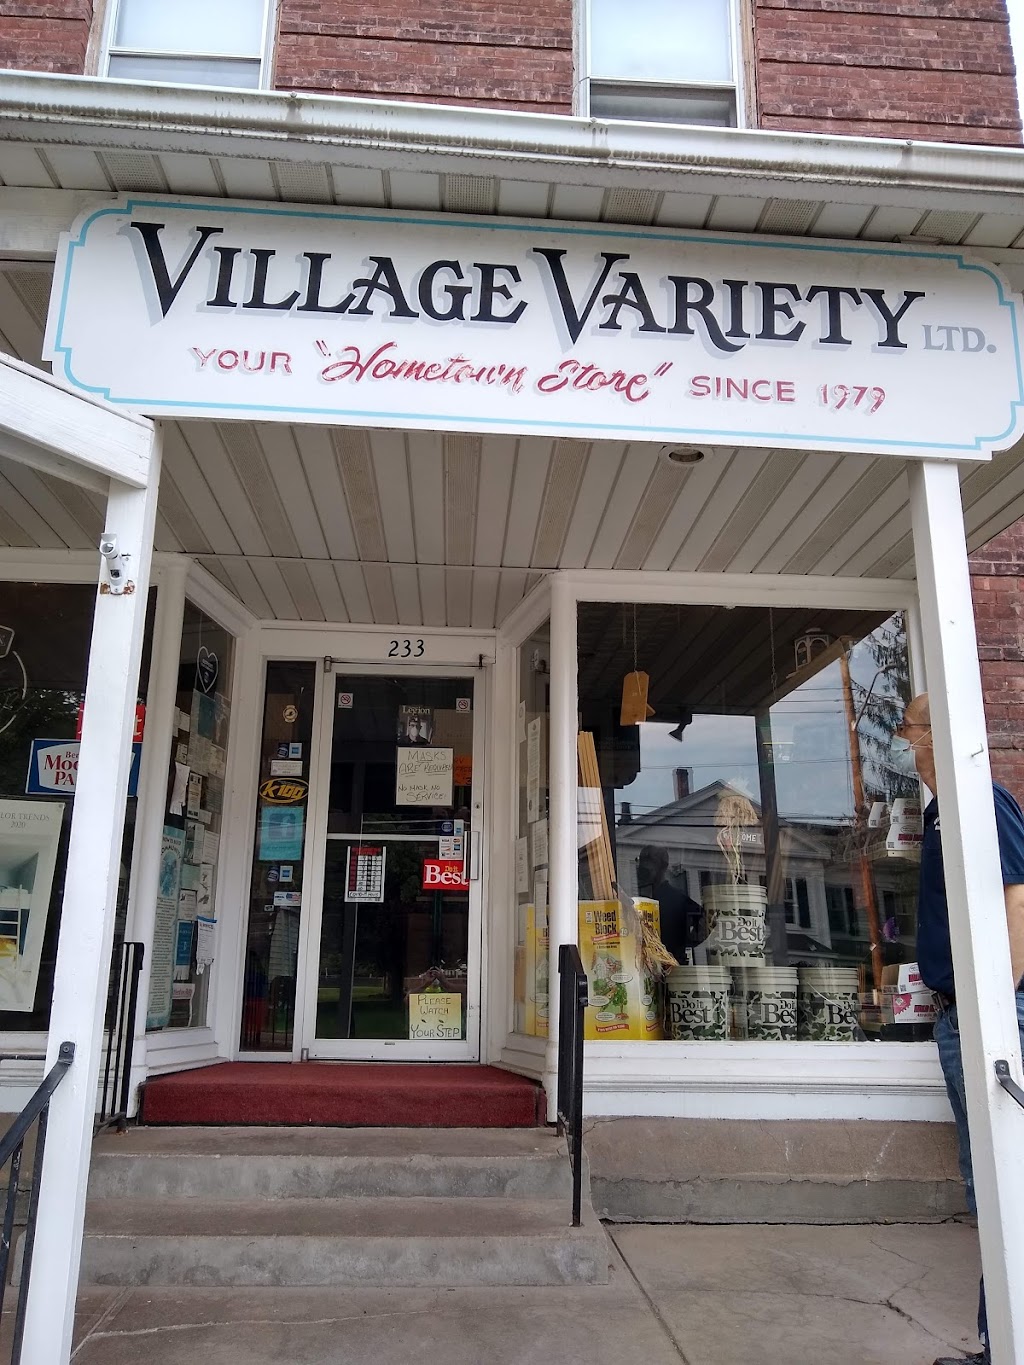 Village Variety Ltd. Do it Best | 233 Main St, Unadilla, NY 13849 | Phone: (607) 369-9444